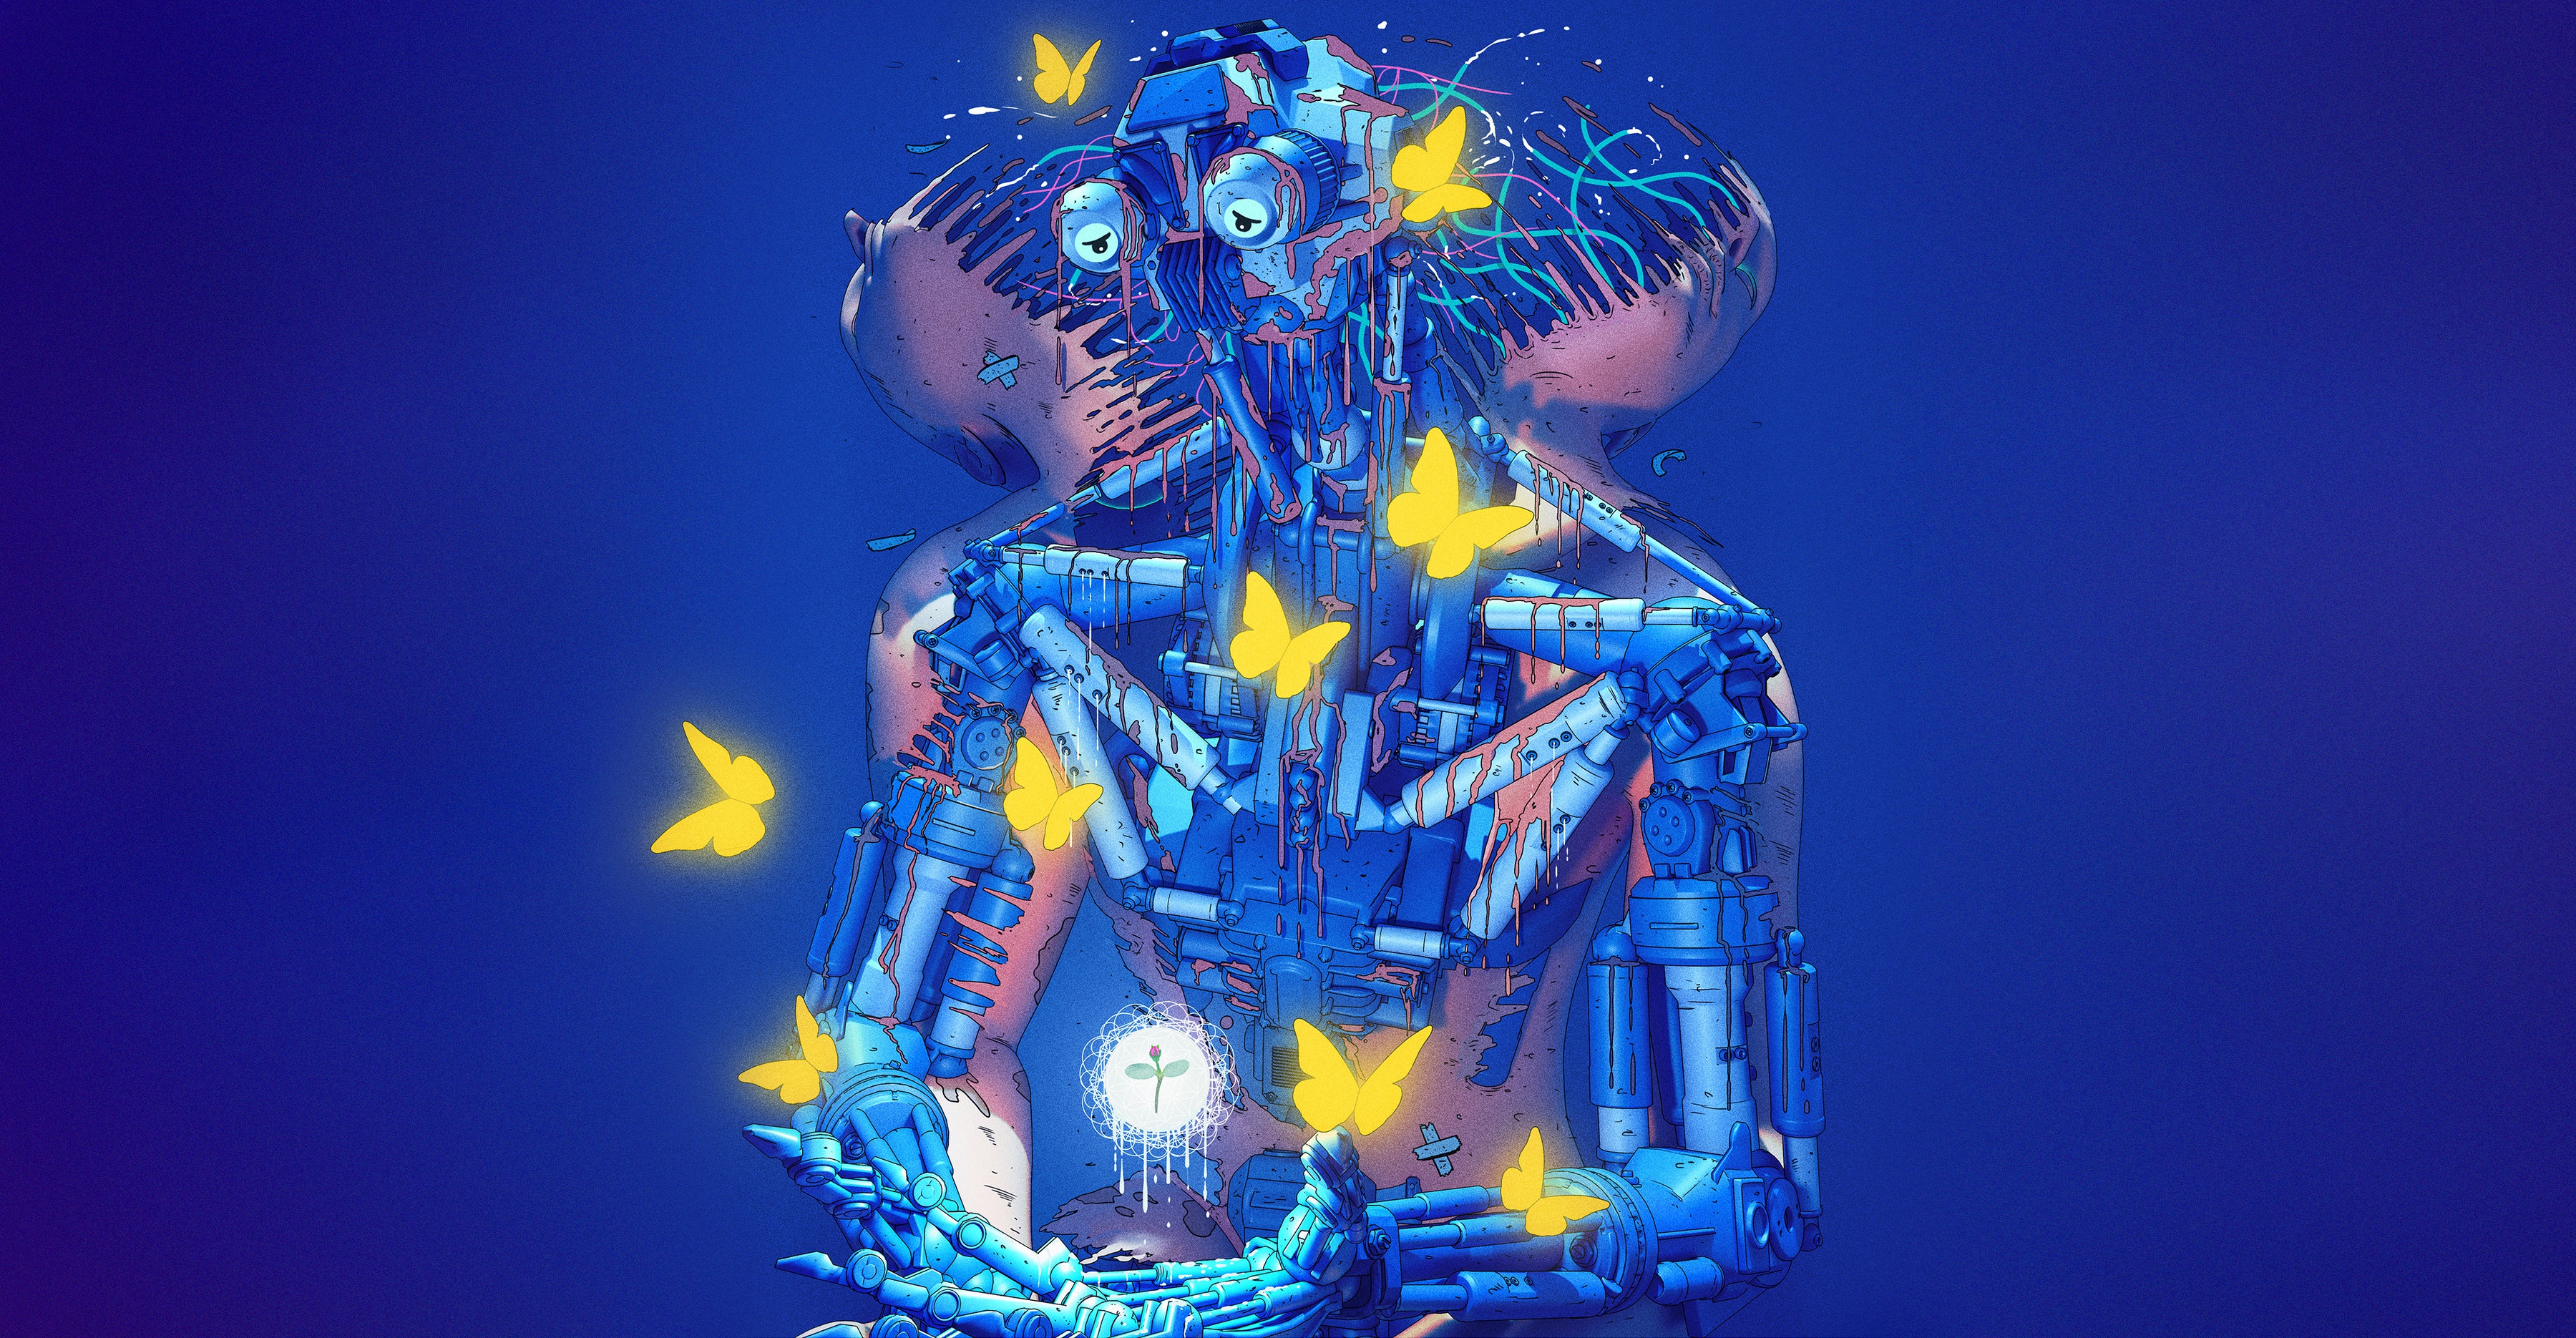 Nick Sullo Digital Art Cyberpunk Butterfly Fantasy Art 3600x1870